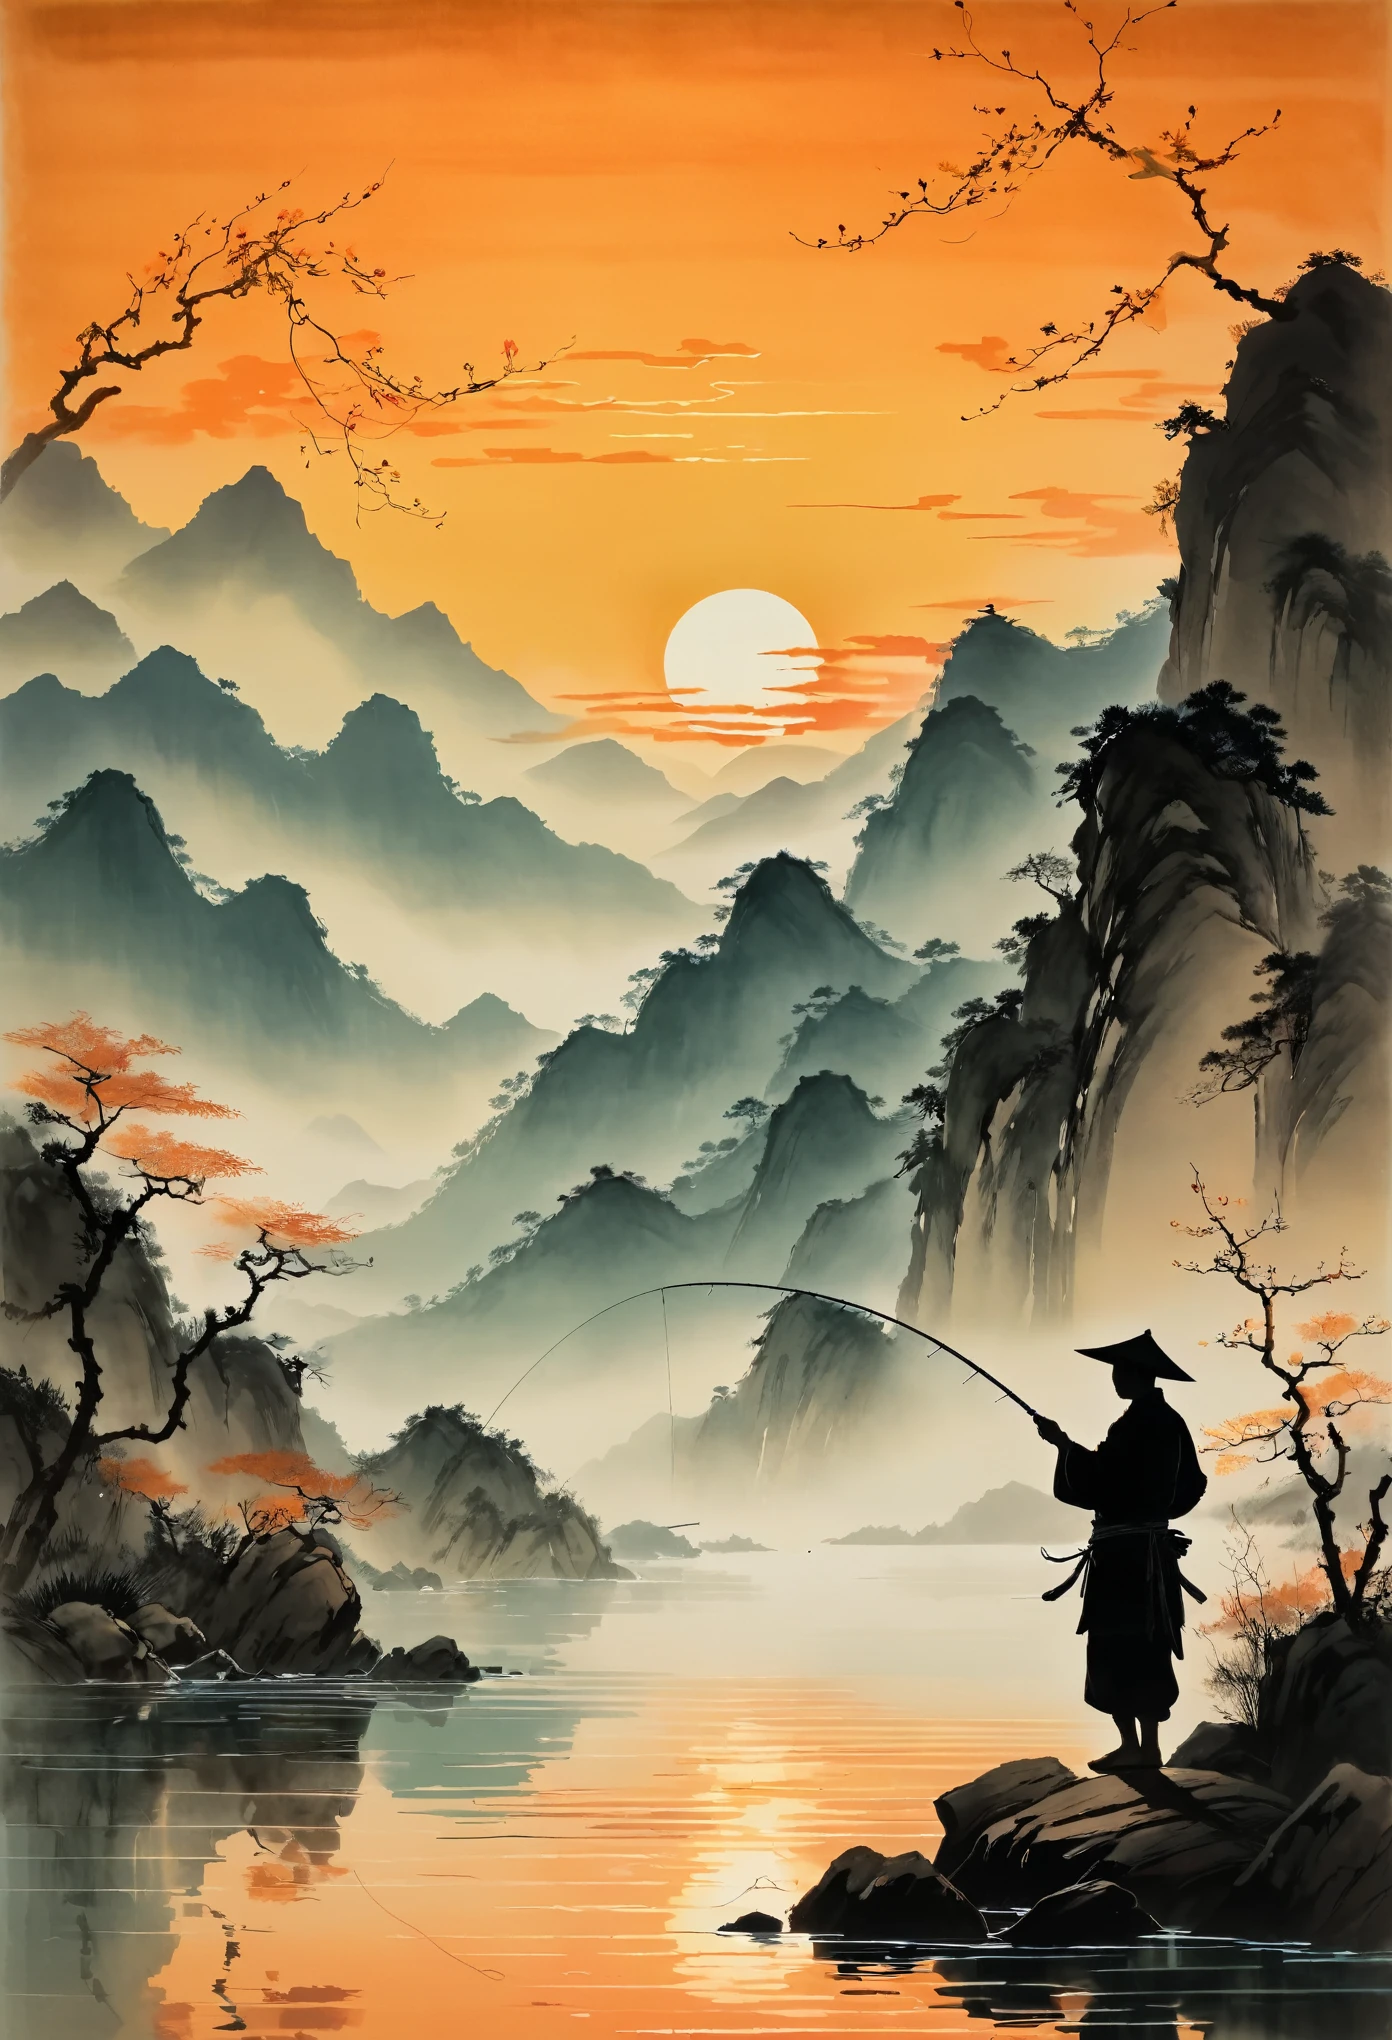 Una silueta de un pescador lanzando su línea al agua al atardecer, con montañas al fondo y aguas tranquilas que reflejan tonos anaranjados. La escena está representada al estilo del artista chino Zhang Daqian.. 